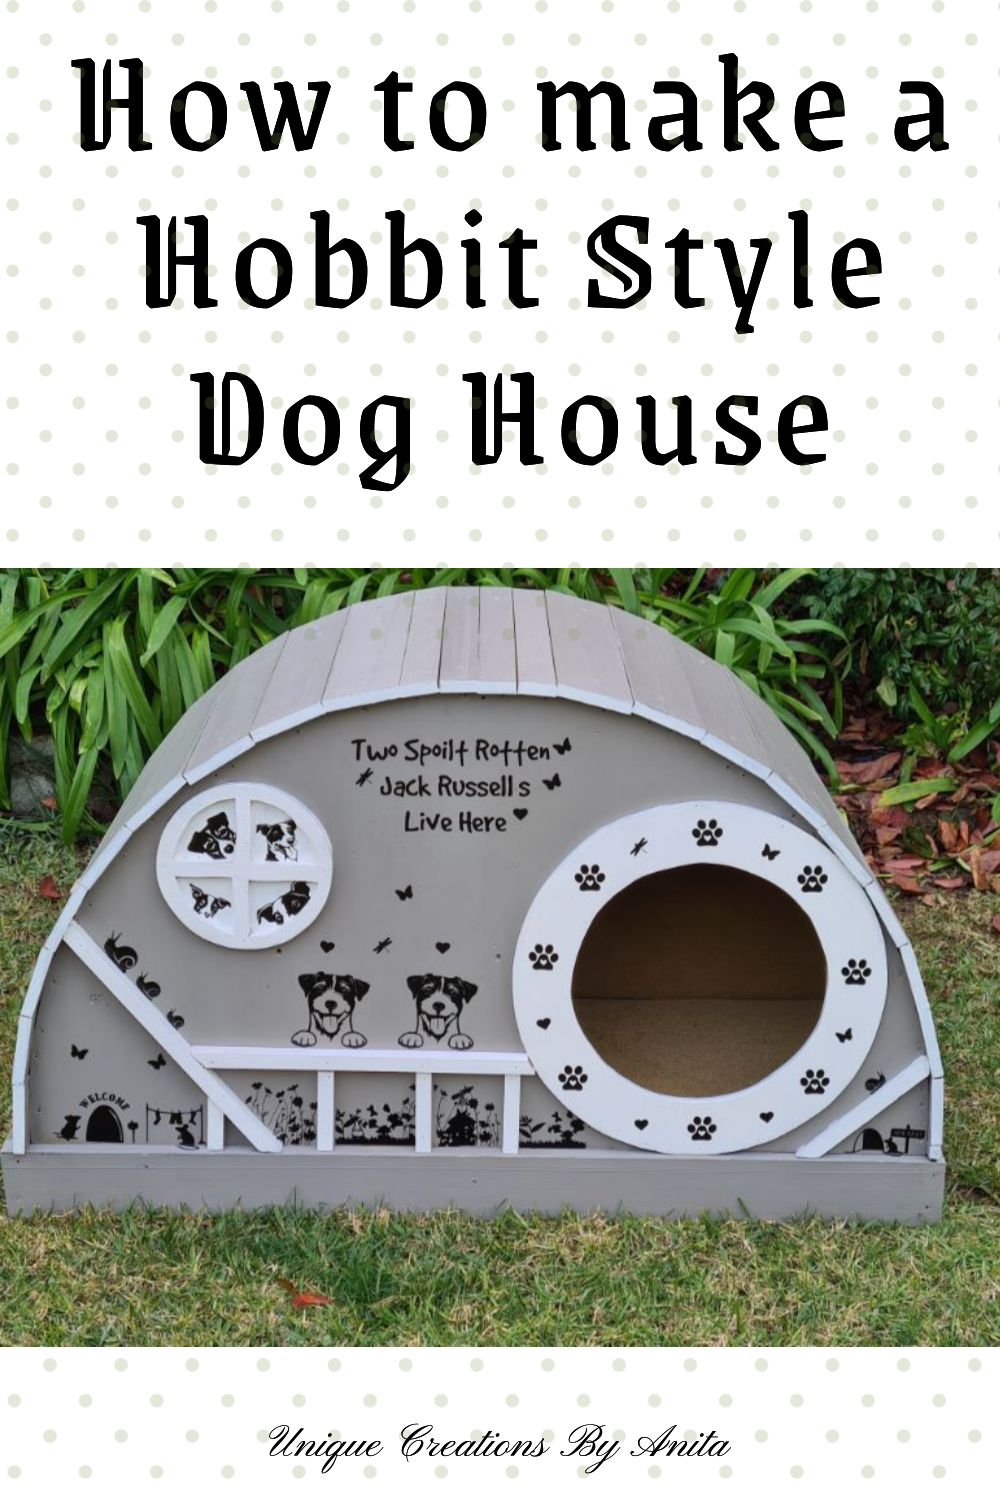 Unique DIY dog kennel